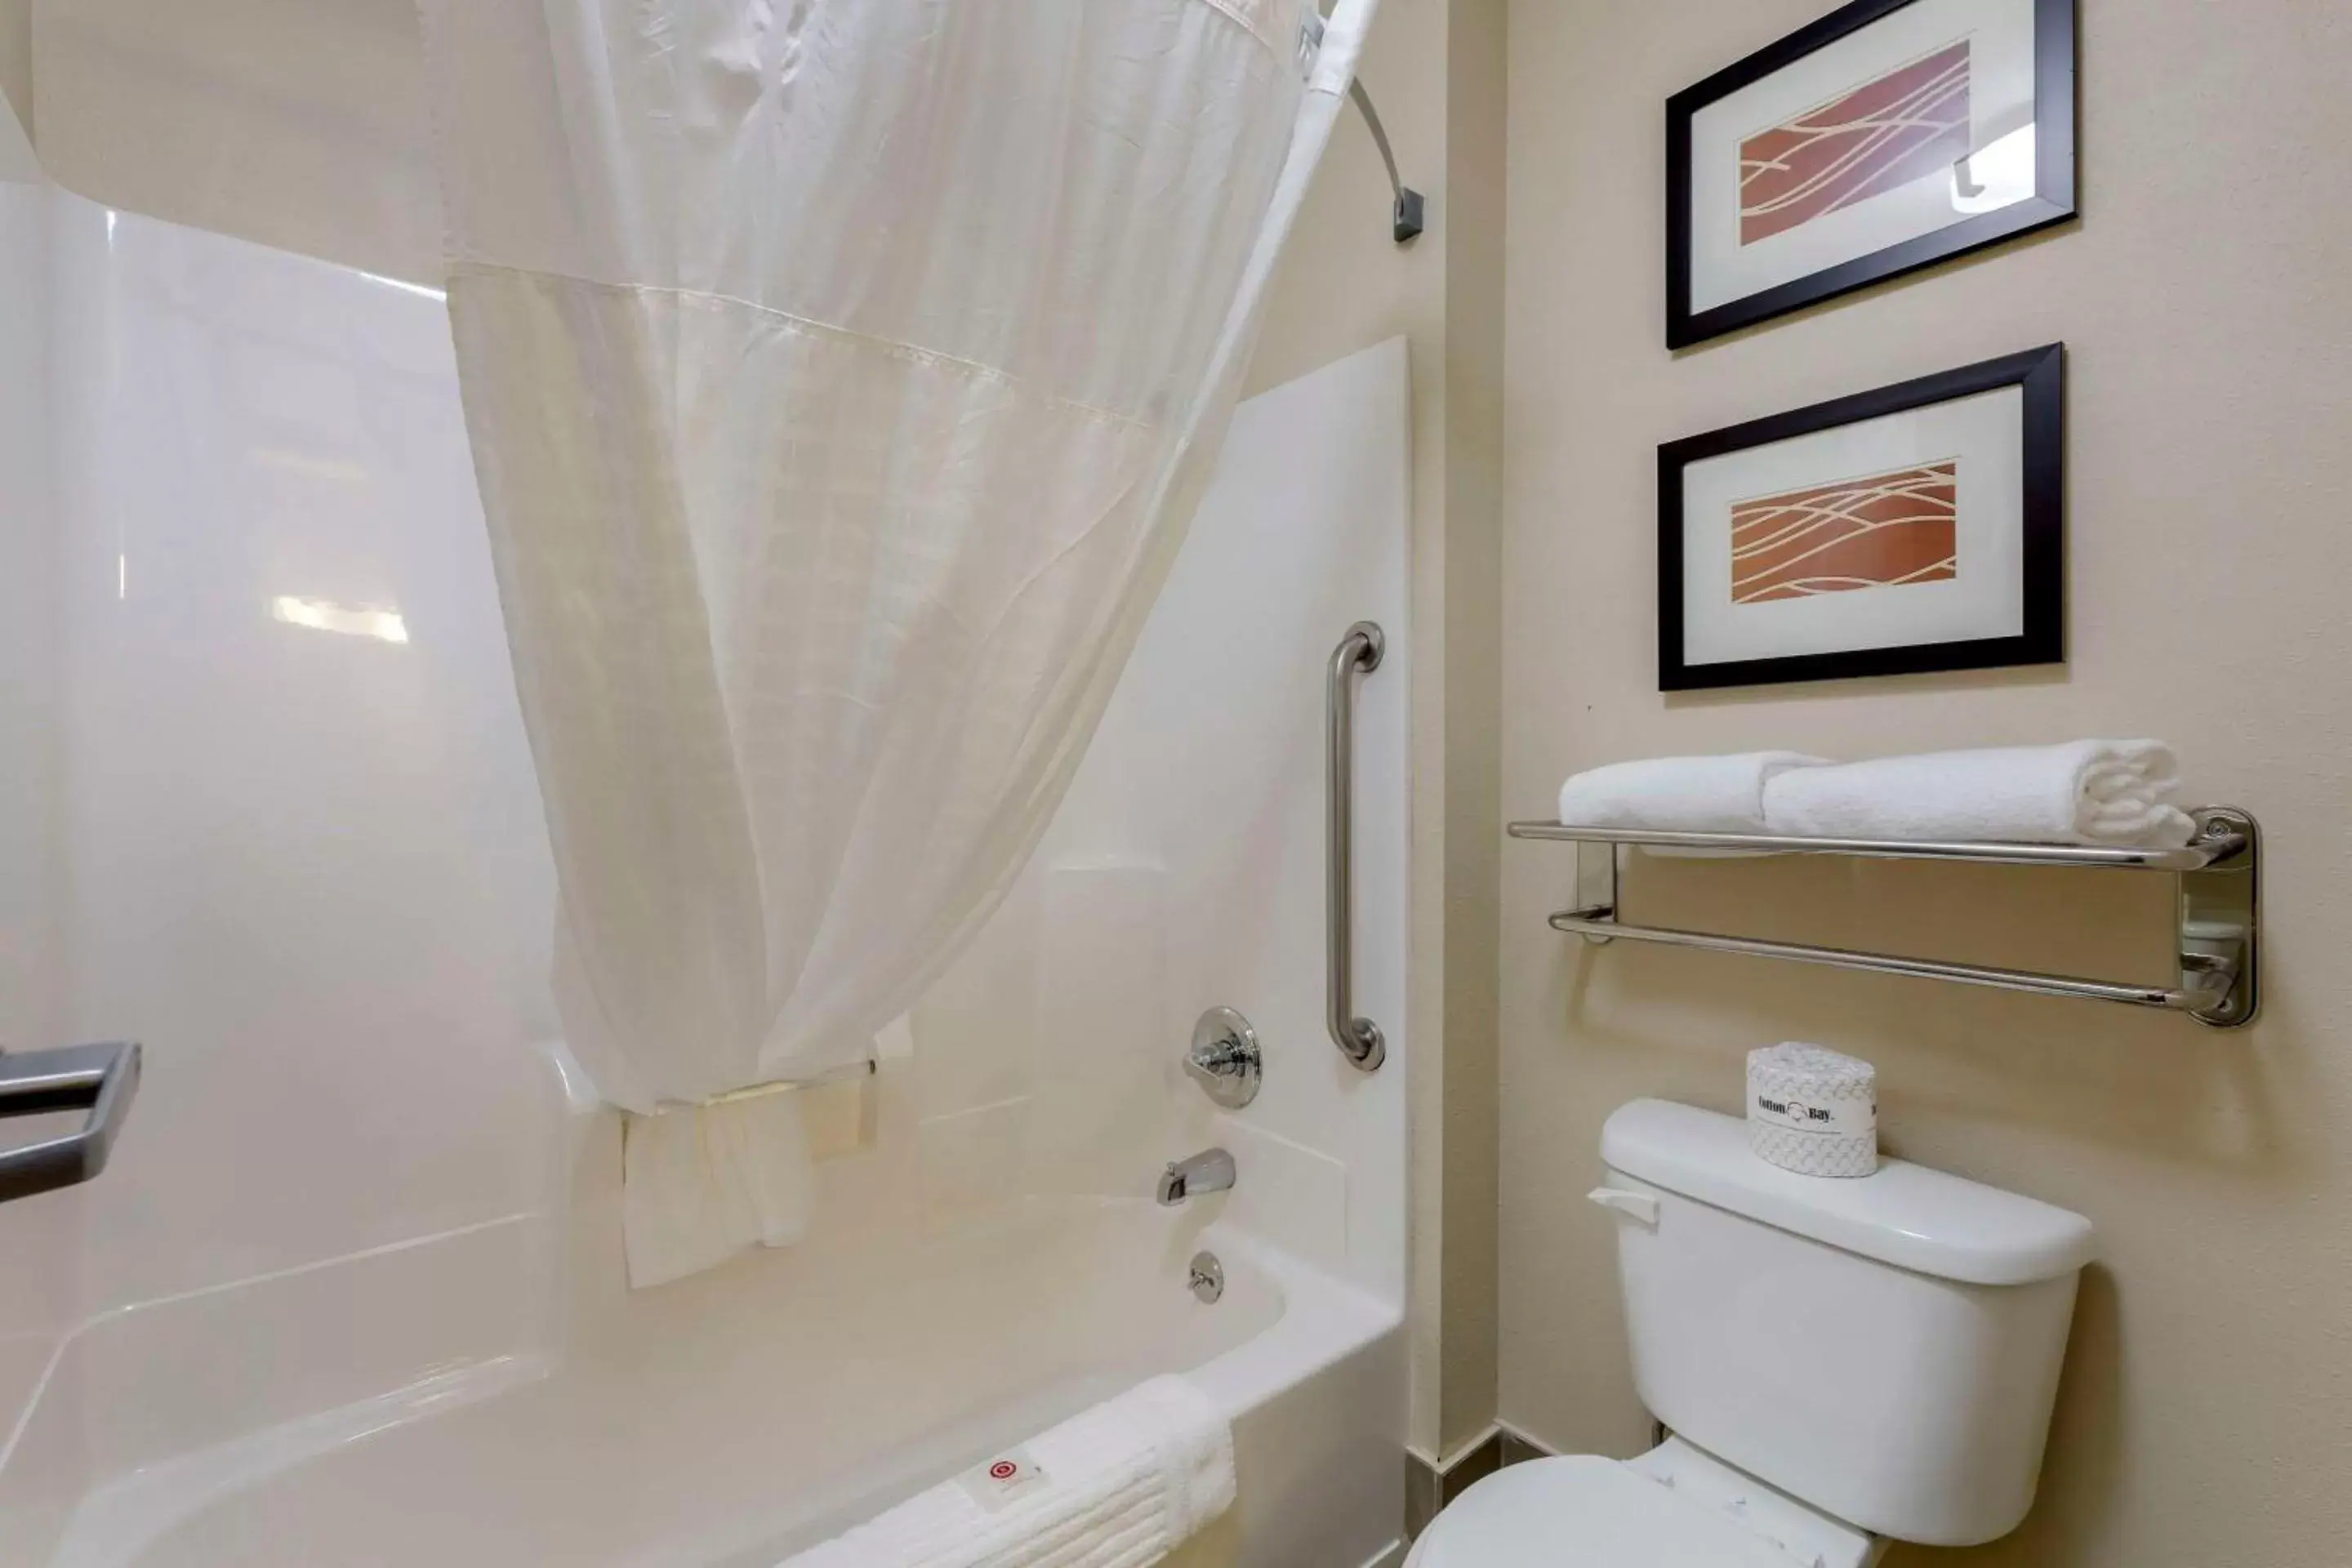 Bedroom, Bathroom in Comfort Inn Mount Vernon